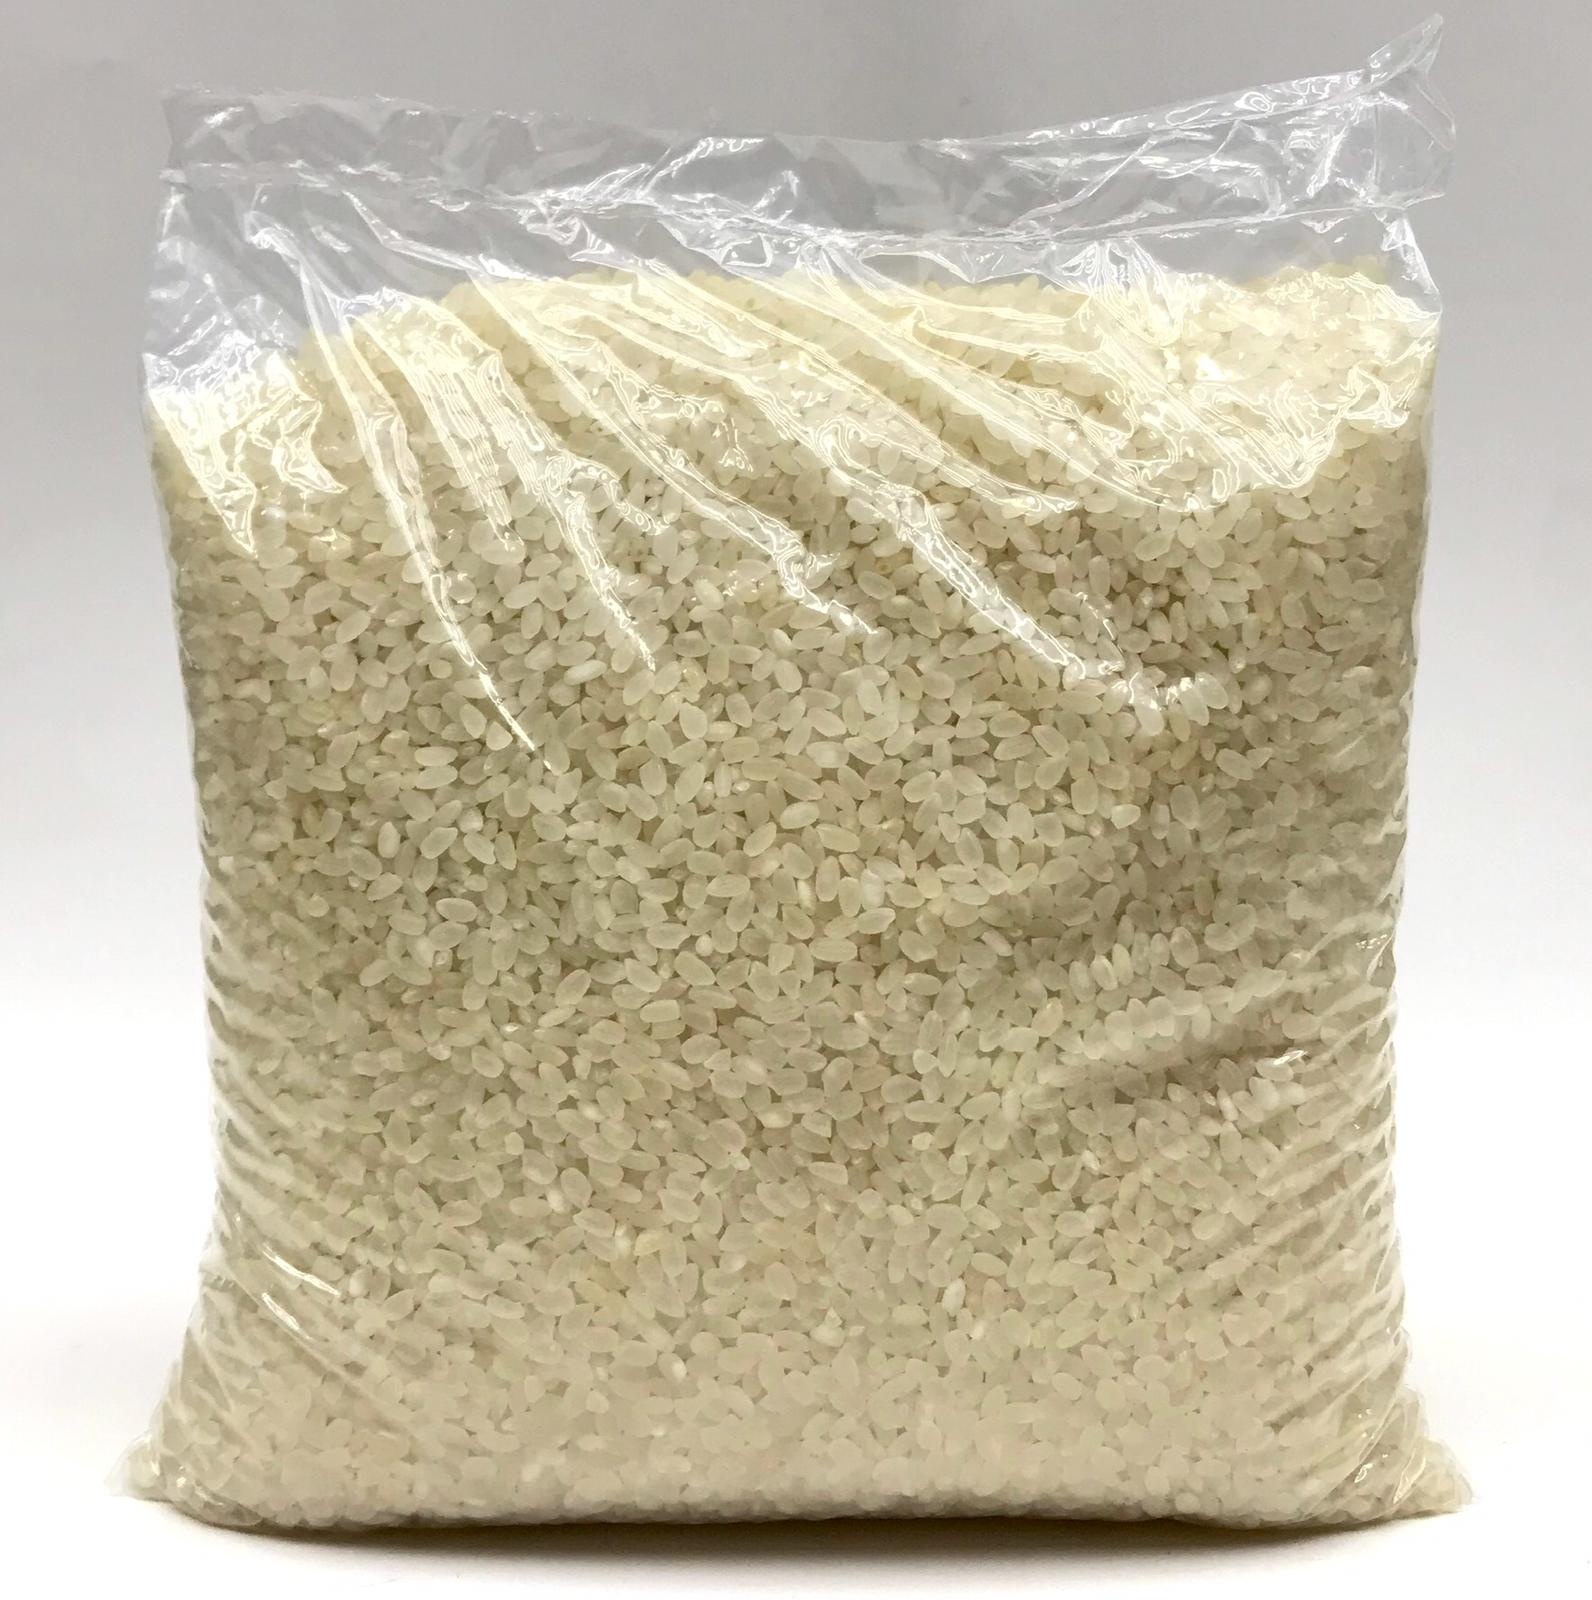 دام برس : دام برس | الهند تمنع صادرات الأرز الأبيض باستثناء أرز بسمتي لضمان إمدادات المستهلكين الهنود